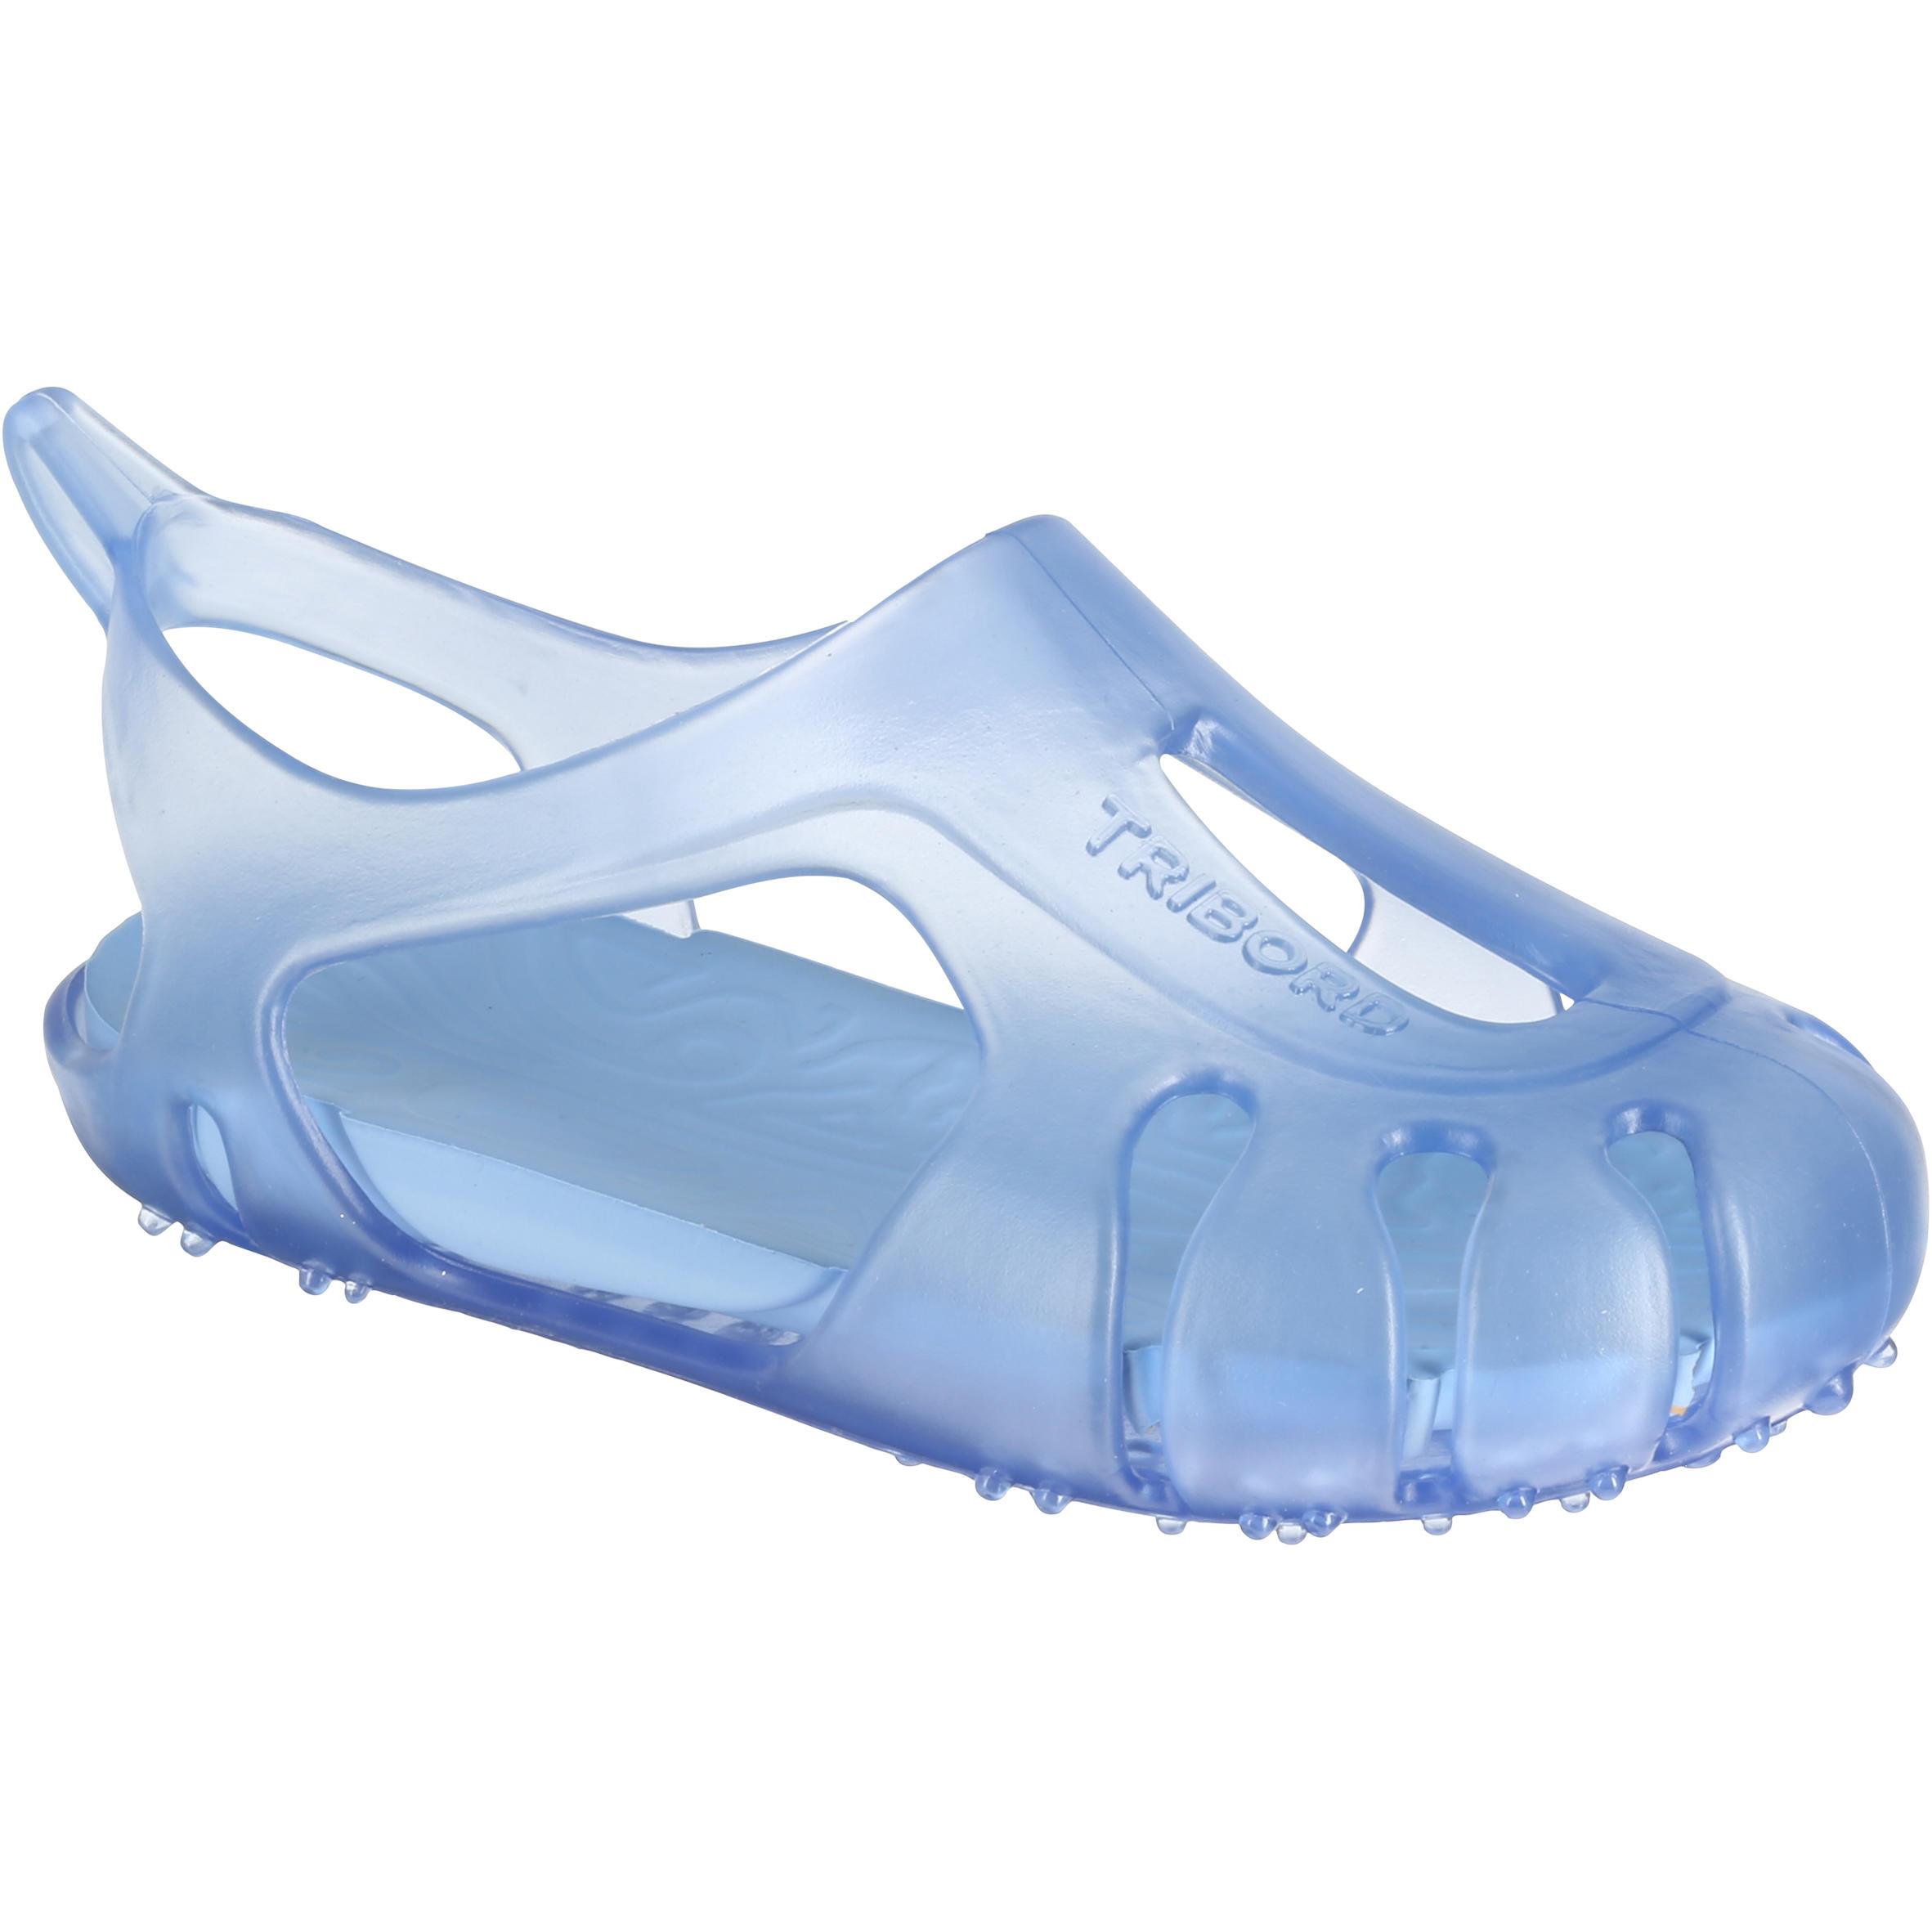 [ด่วน!! โปรโมชั่นมีจำนวนจำกัด] รองเท้าลุยน้ำสำหรับเด็กรุ่น SSL 100 (สีฟ้า) สำหรับ ว่ายน้ำ